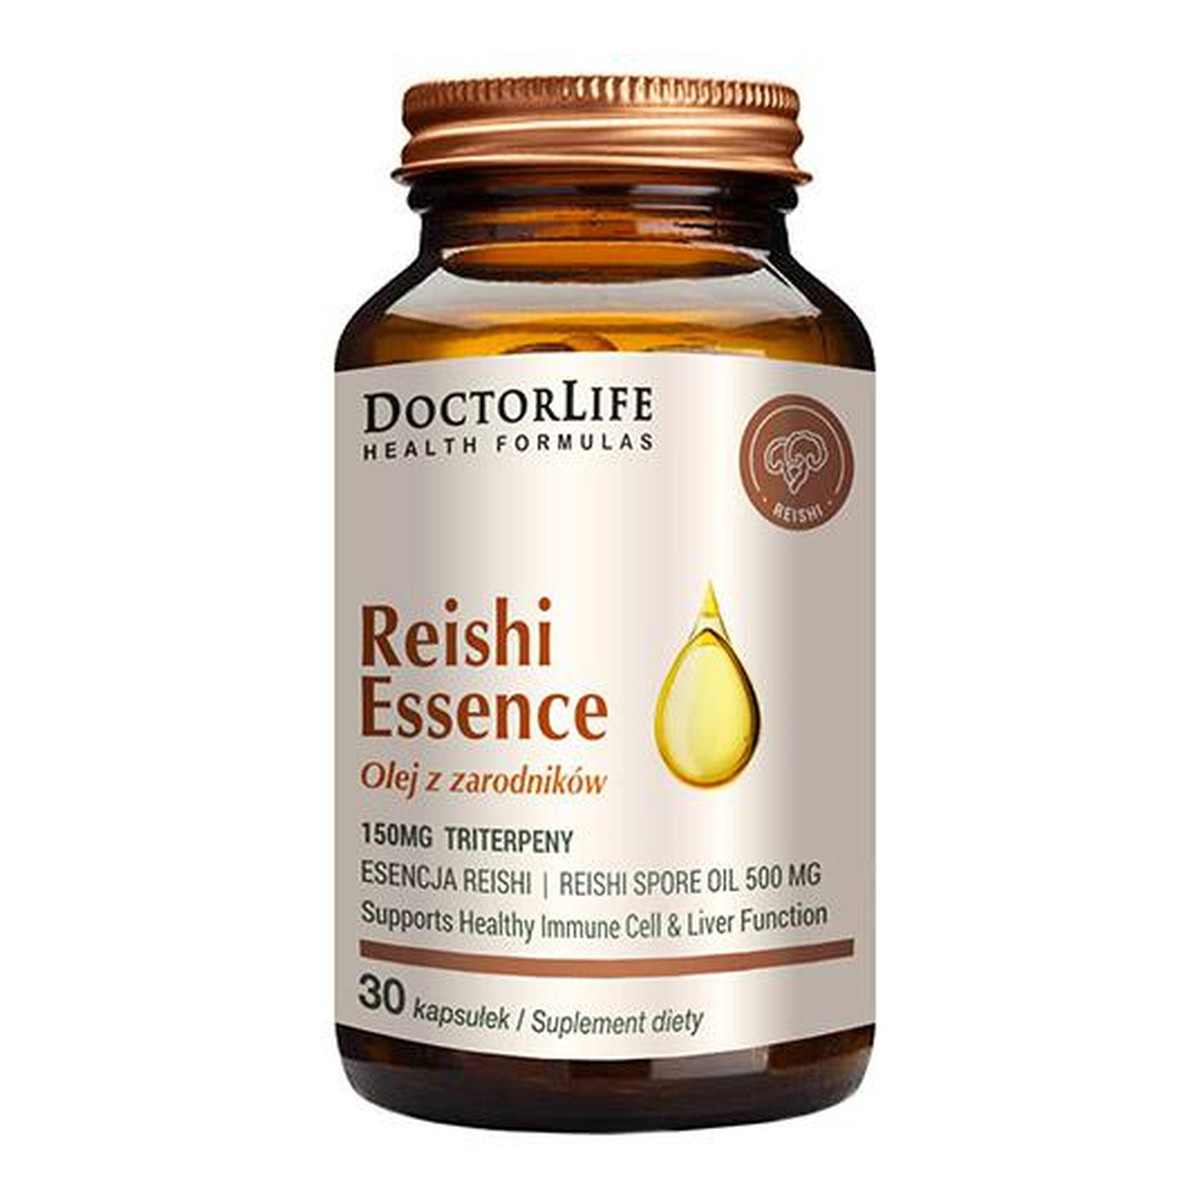 Doctor Life Reishi essence olej z zarodników suplement diety 30 kapsułek